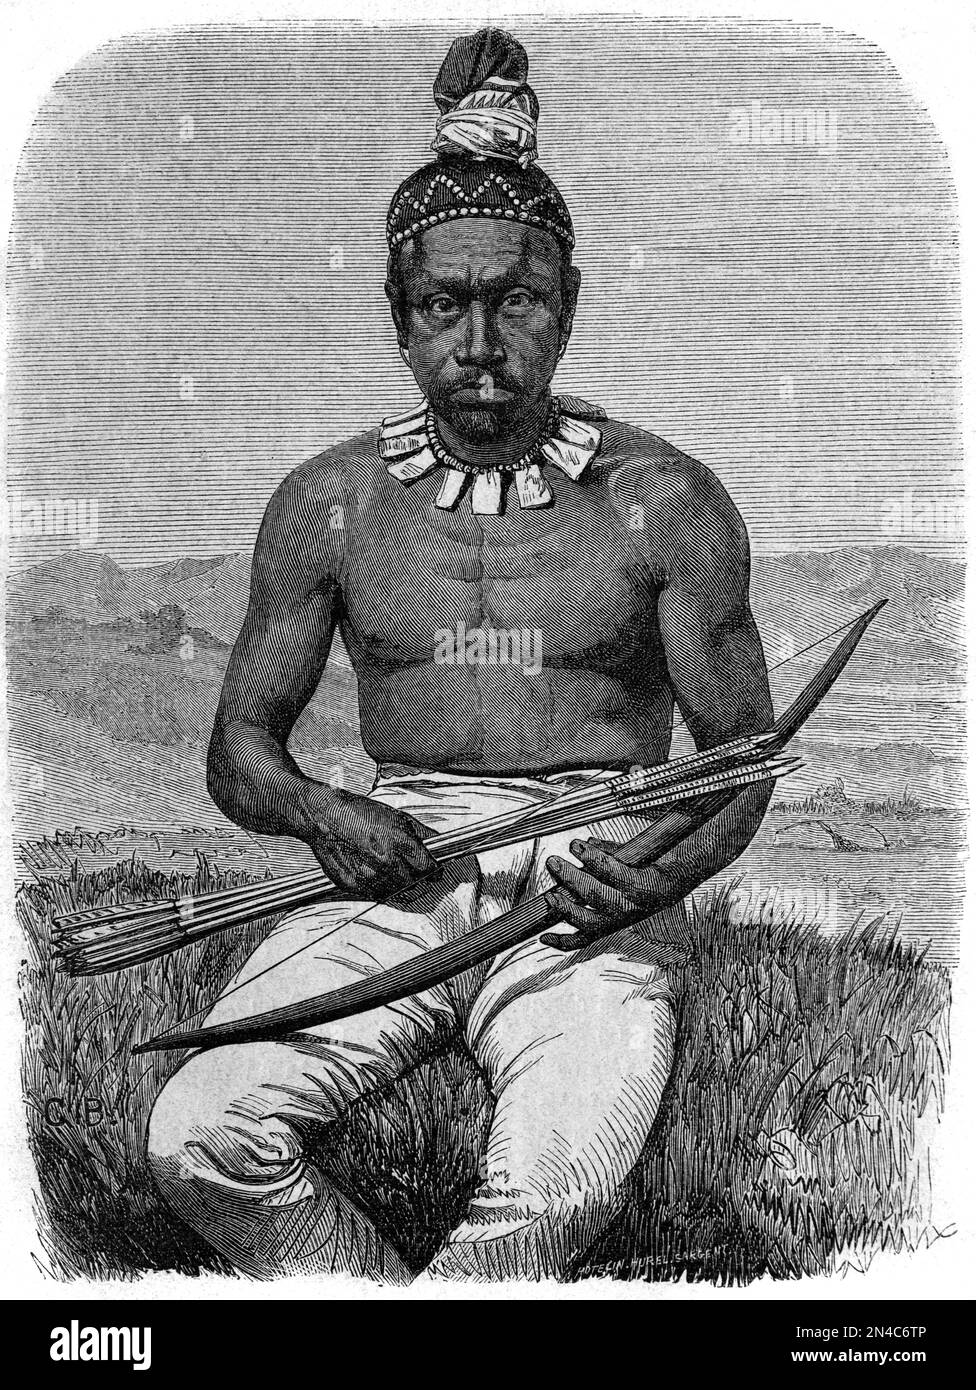 Einheimischer kalifornischer oder indigener amerikanischer Mann mit Pfeil und Bogen. Vintage-Illustration oder Gravur 1862 Stockfoto